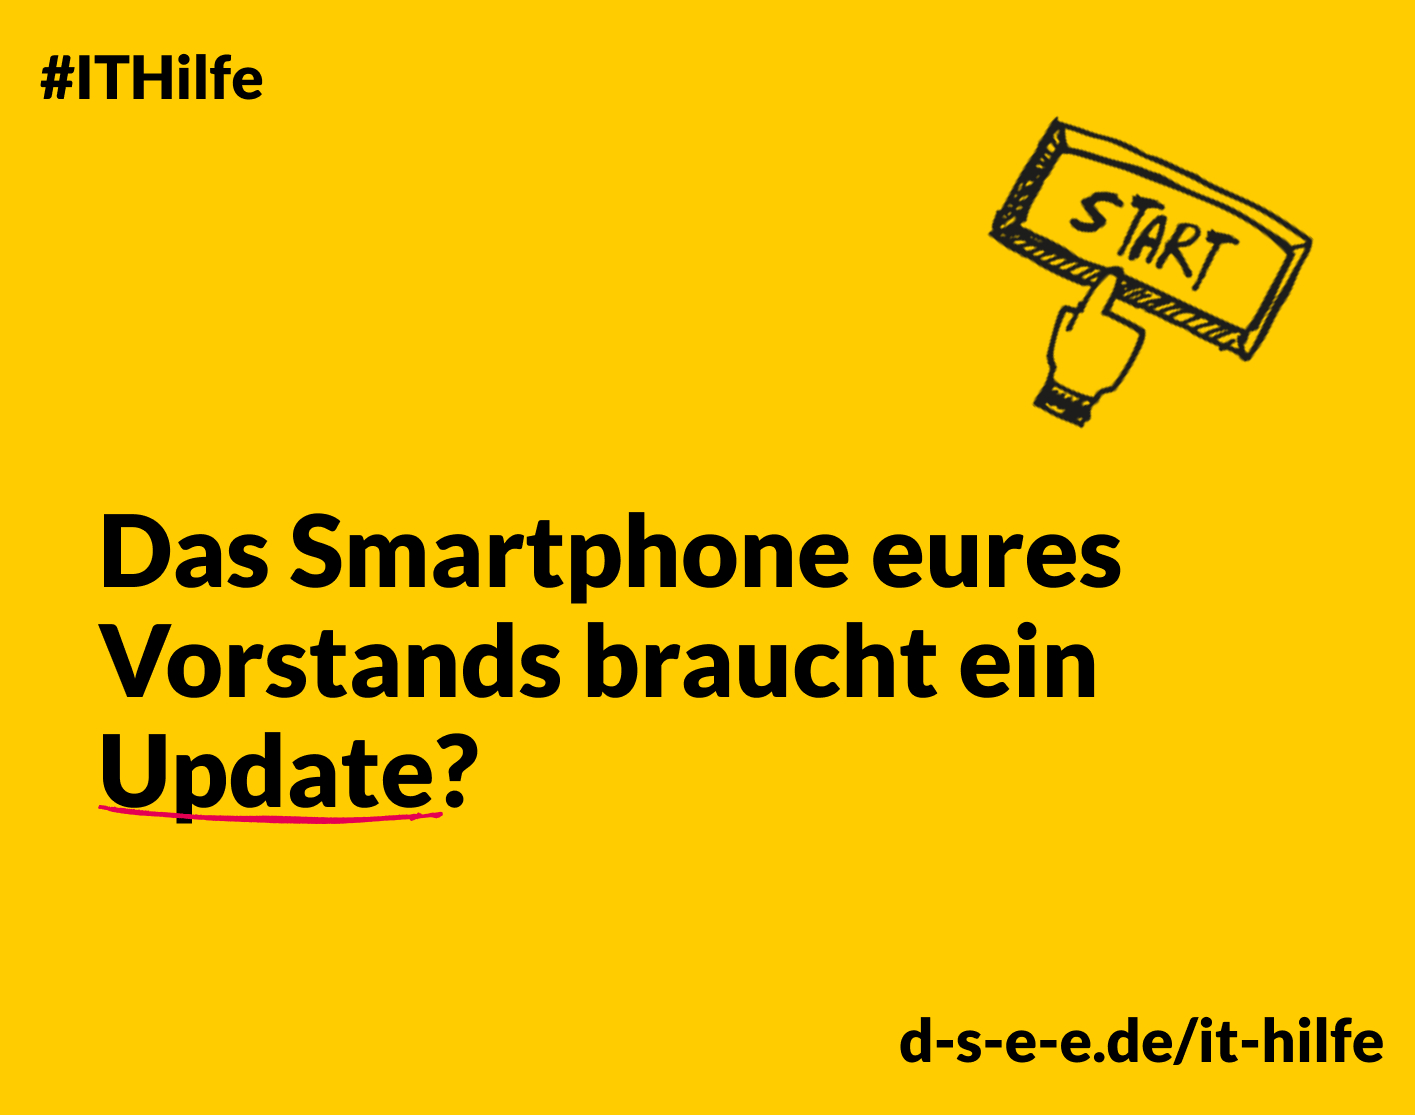 Grafik mit einem Finger, der auf einen Start-Button drückt. Text: #IT-Hilfe. Das Smartphone eures Vorstands braucht ein Update? d-s-e-e.de/it-hilfe